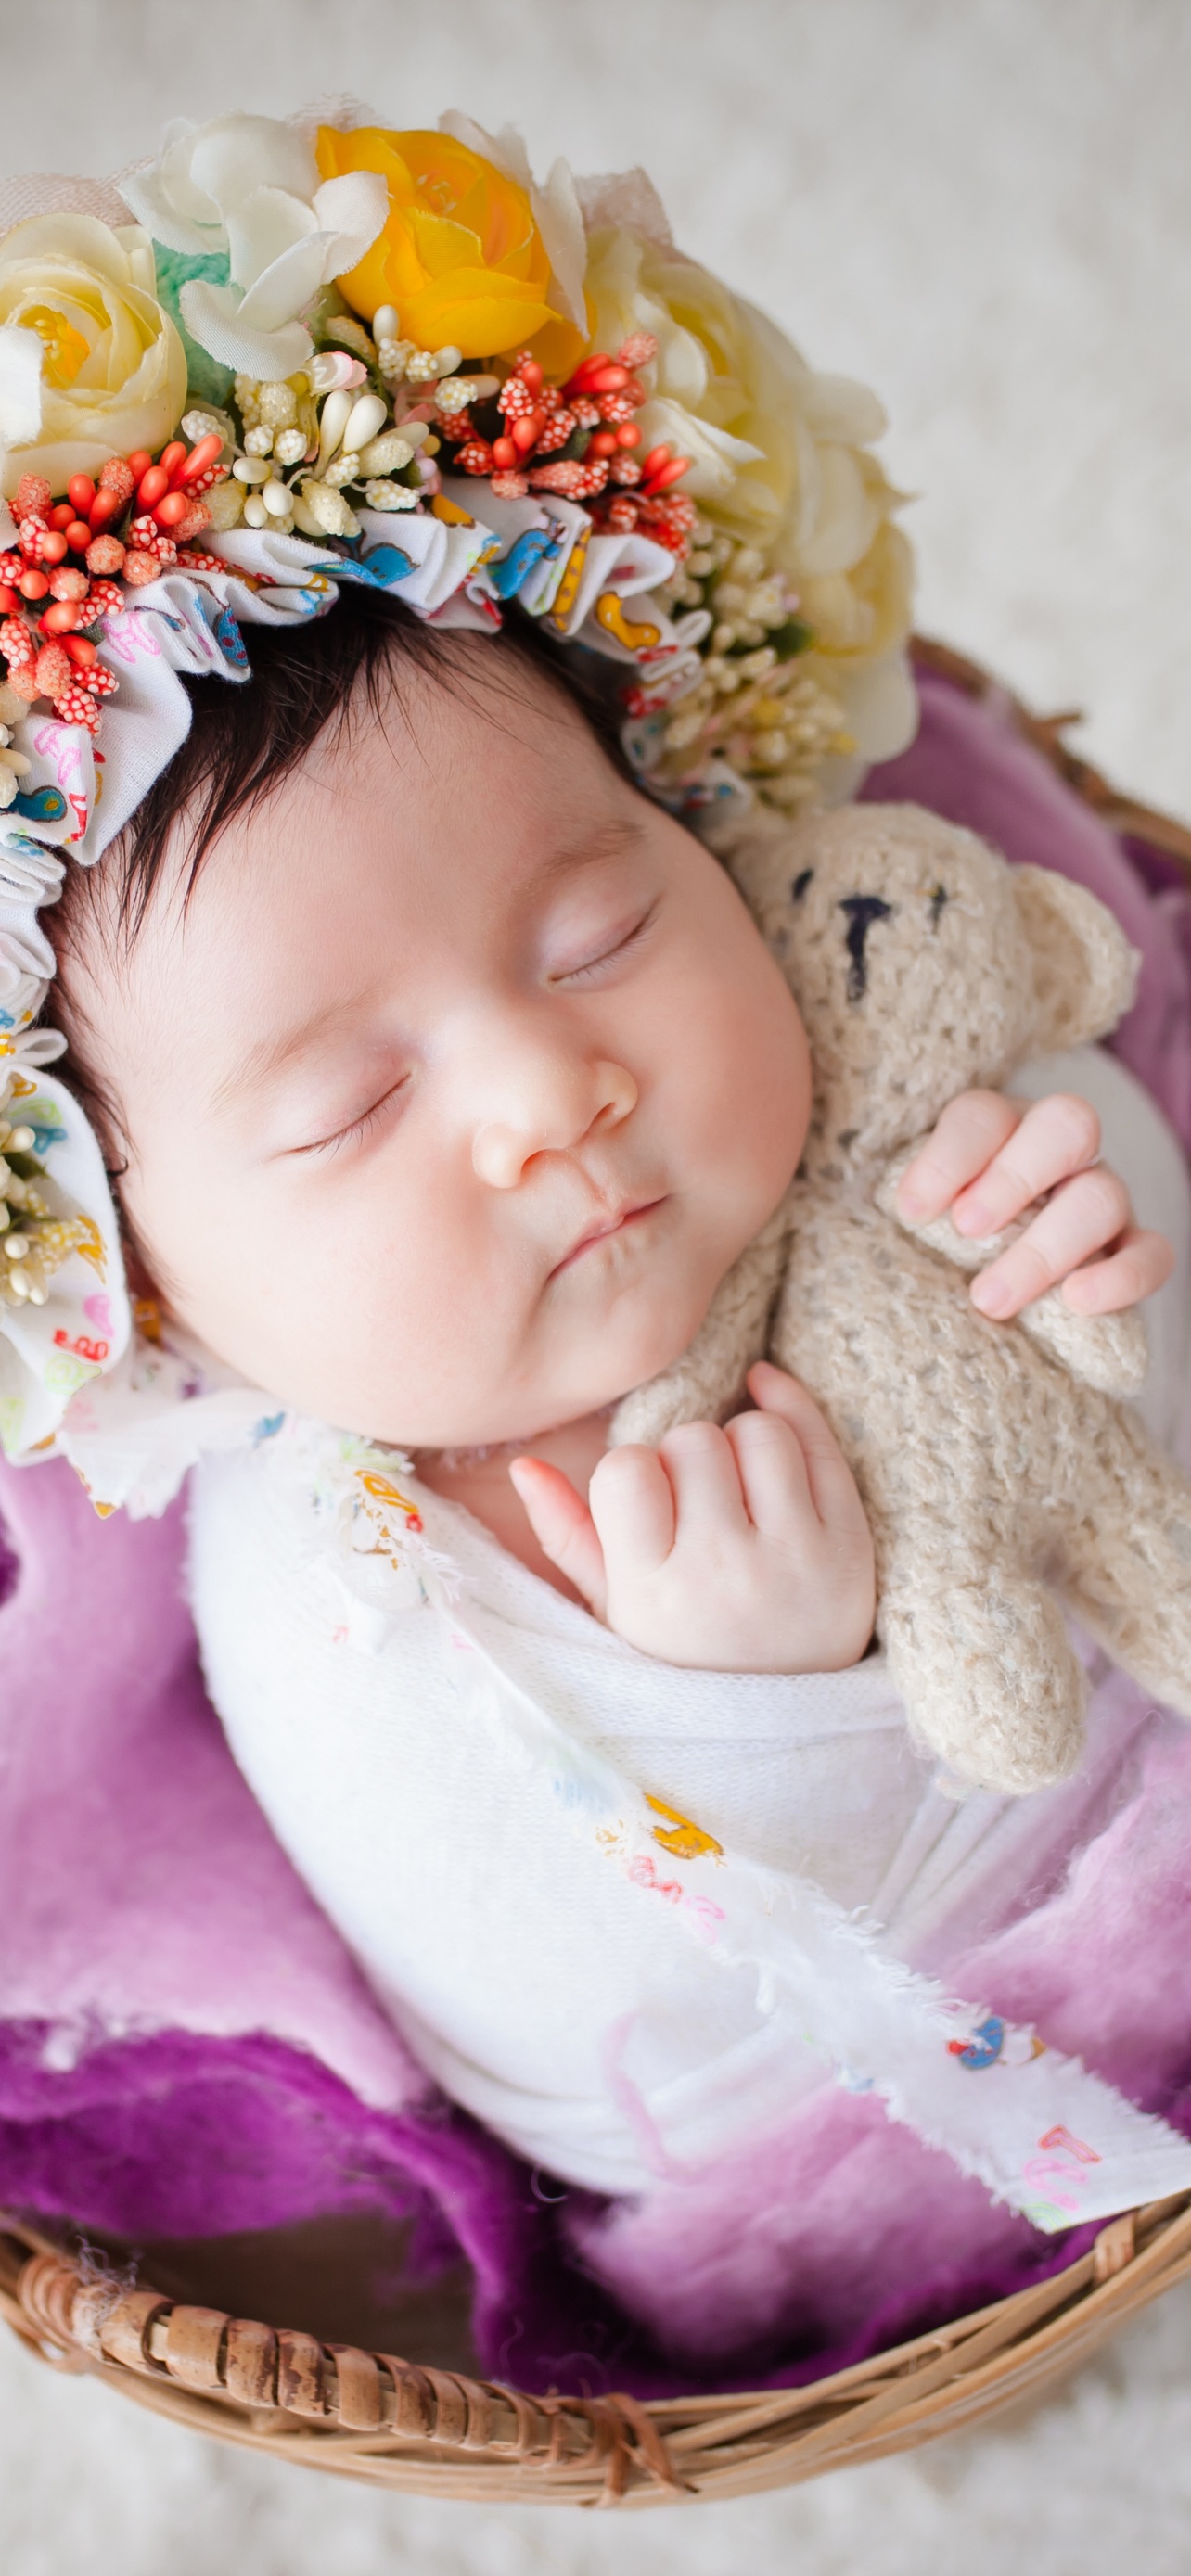 Newborn Wallpaper 4K, Flower Wreath, Sleeping baby, White fur, Basket